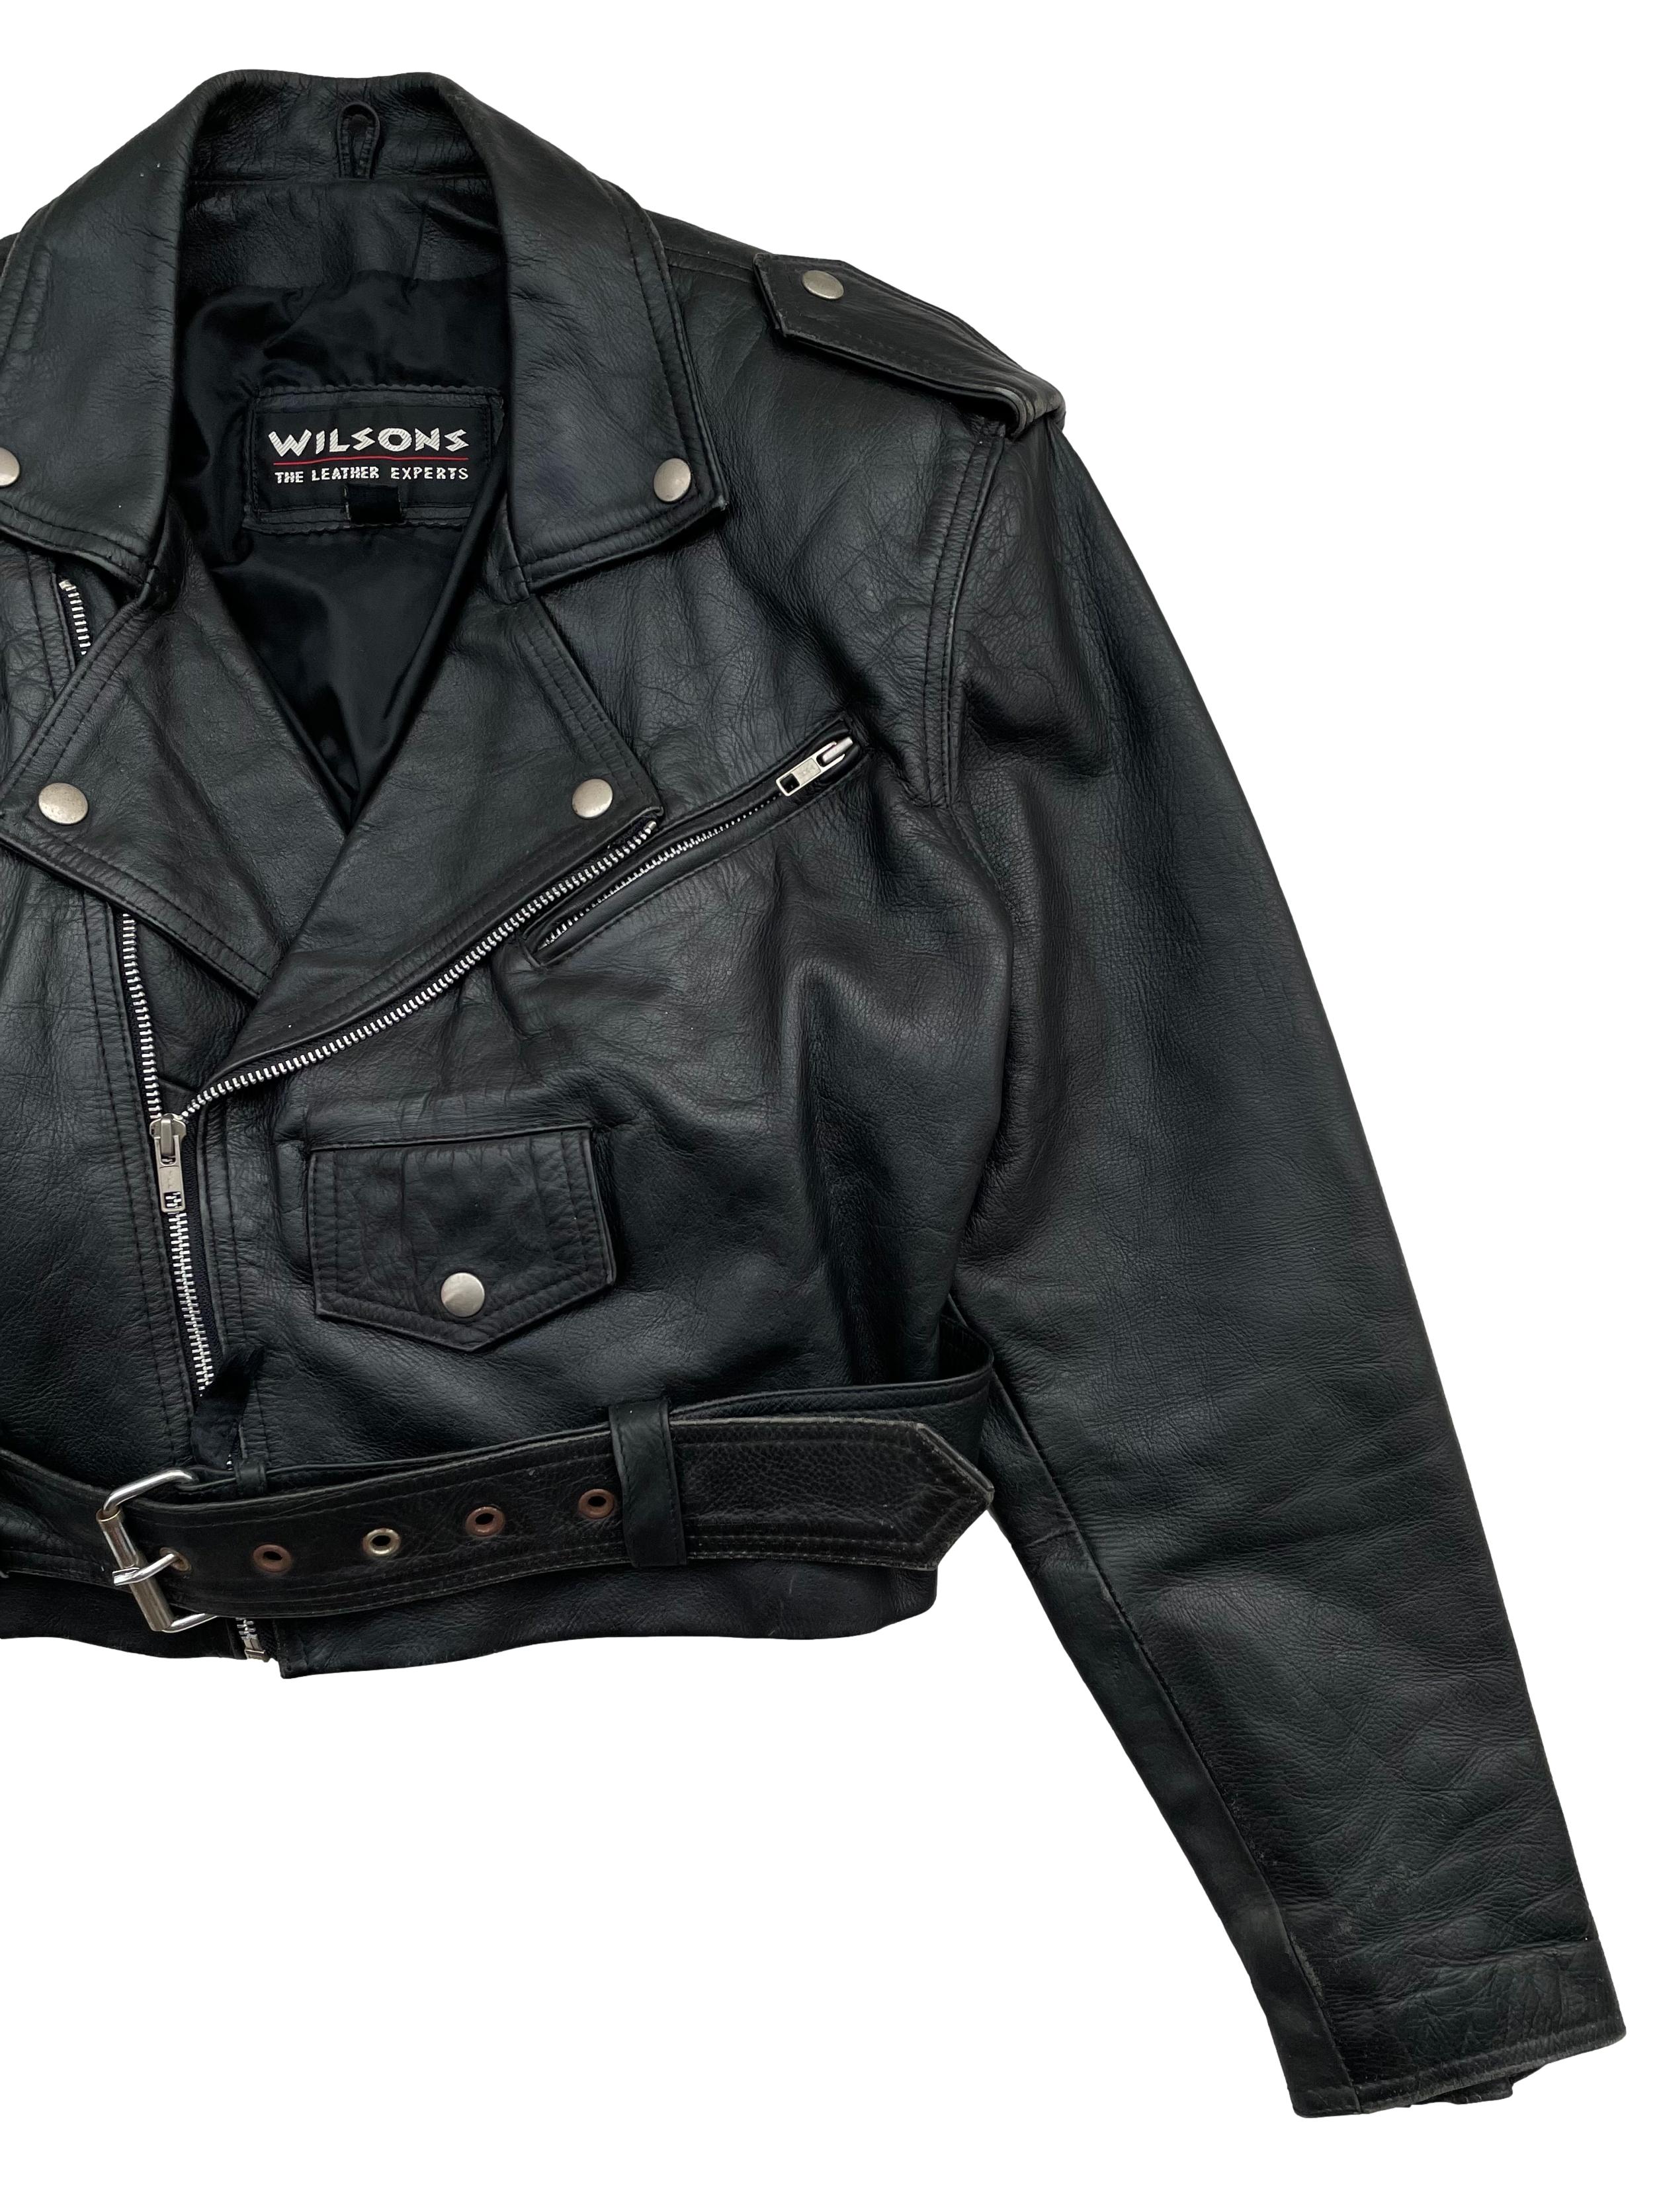 Biker jacket vintage 100% cuero negro, forrada y con hombreras. Busto 105cm Largo 45cm. Tienes signos de uso típicos de este tipo de pieza y oxido en algunos greviches. 